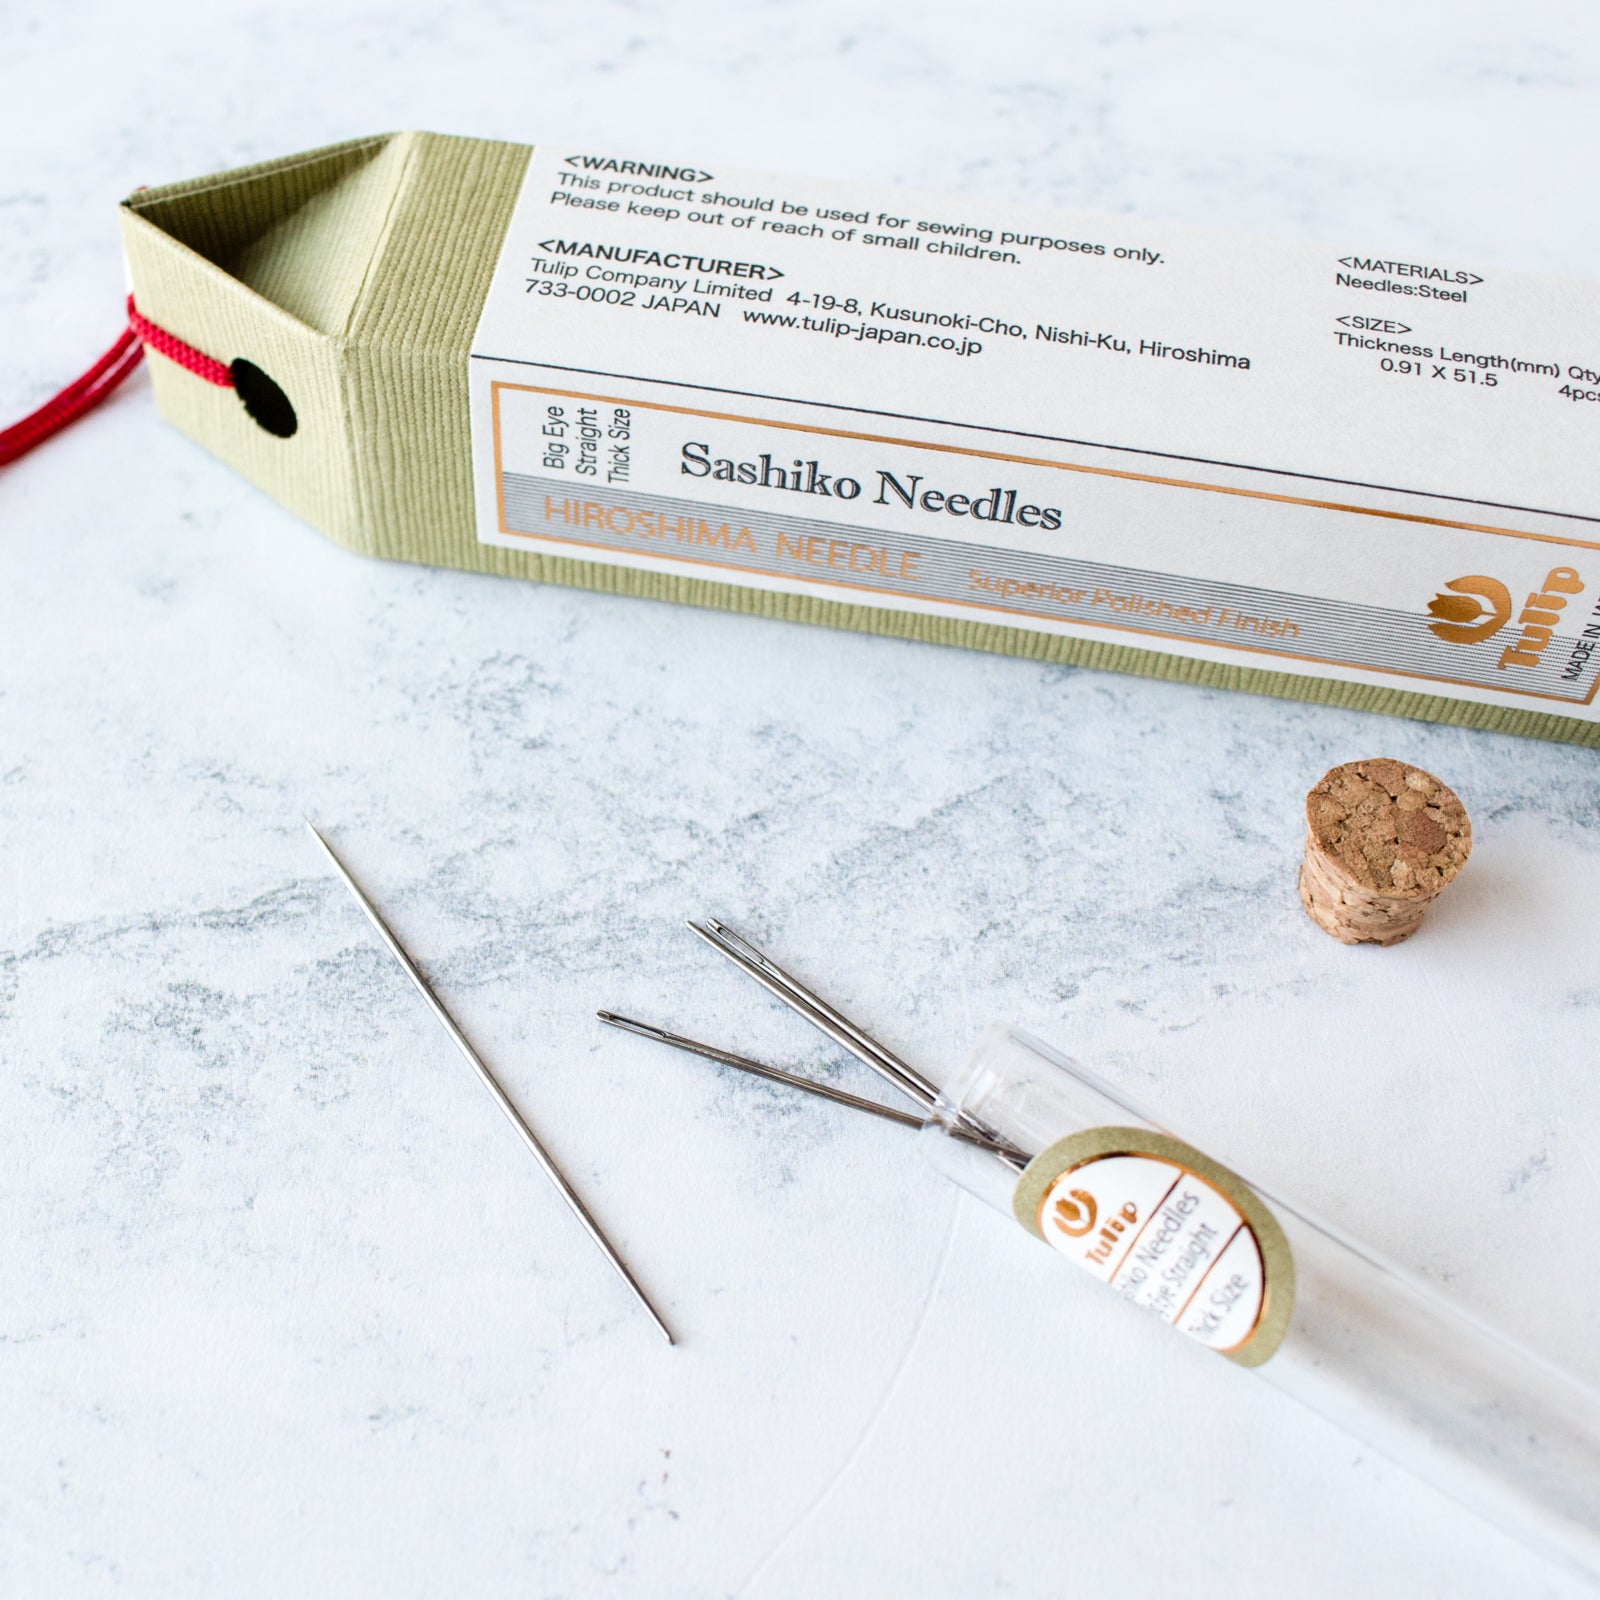 About Sashiko Needles - A Threaded Needle